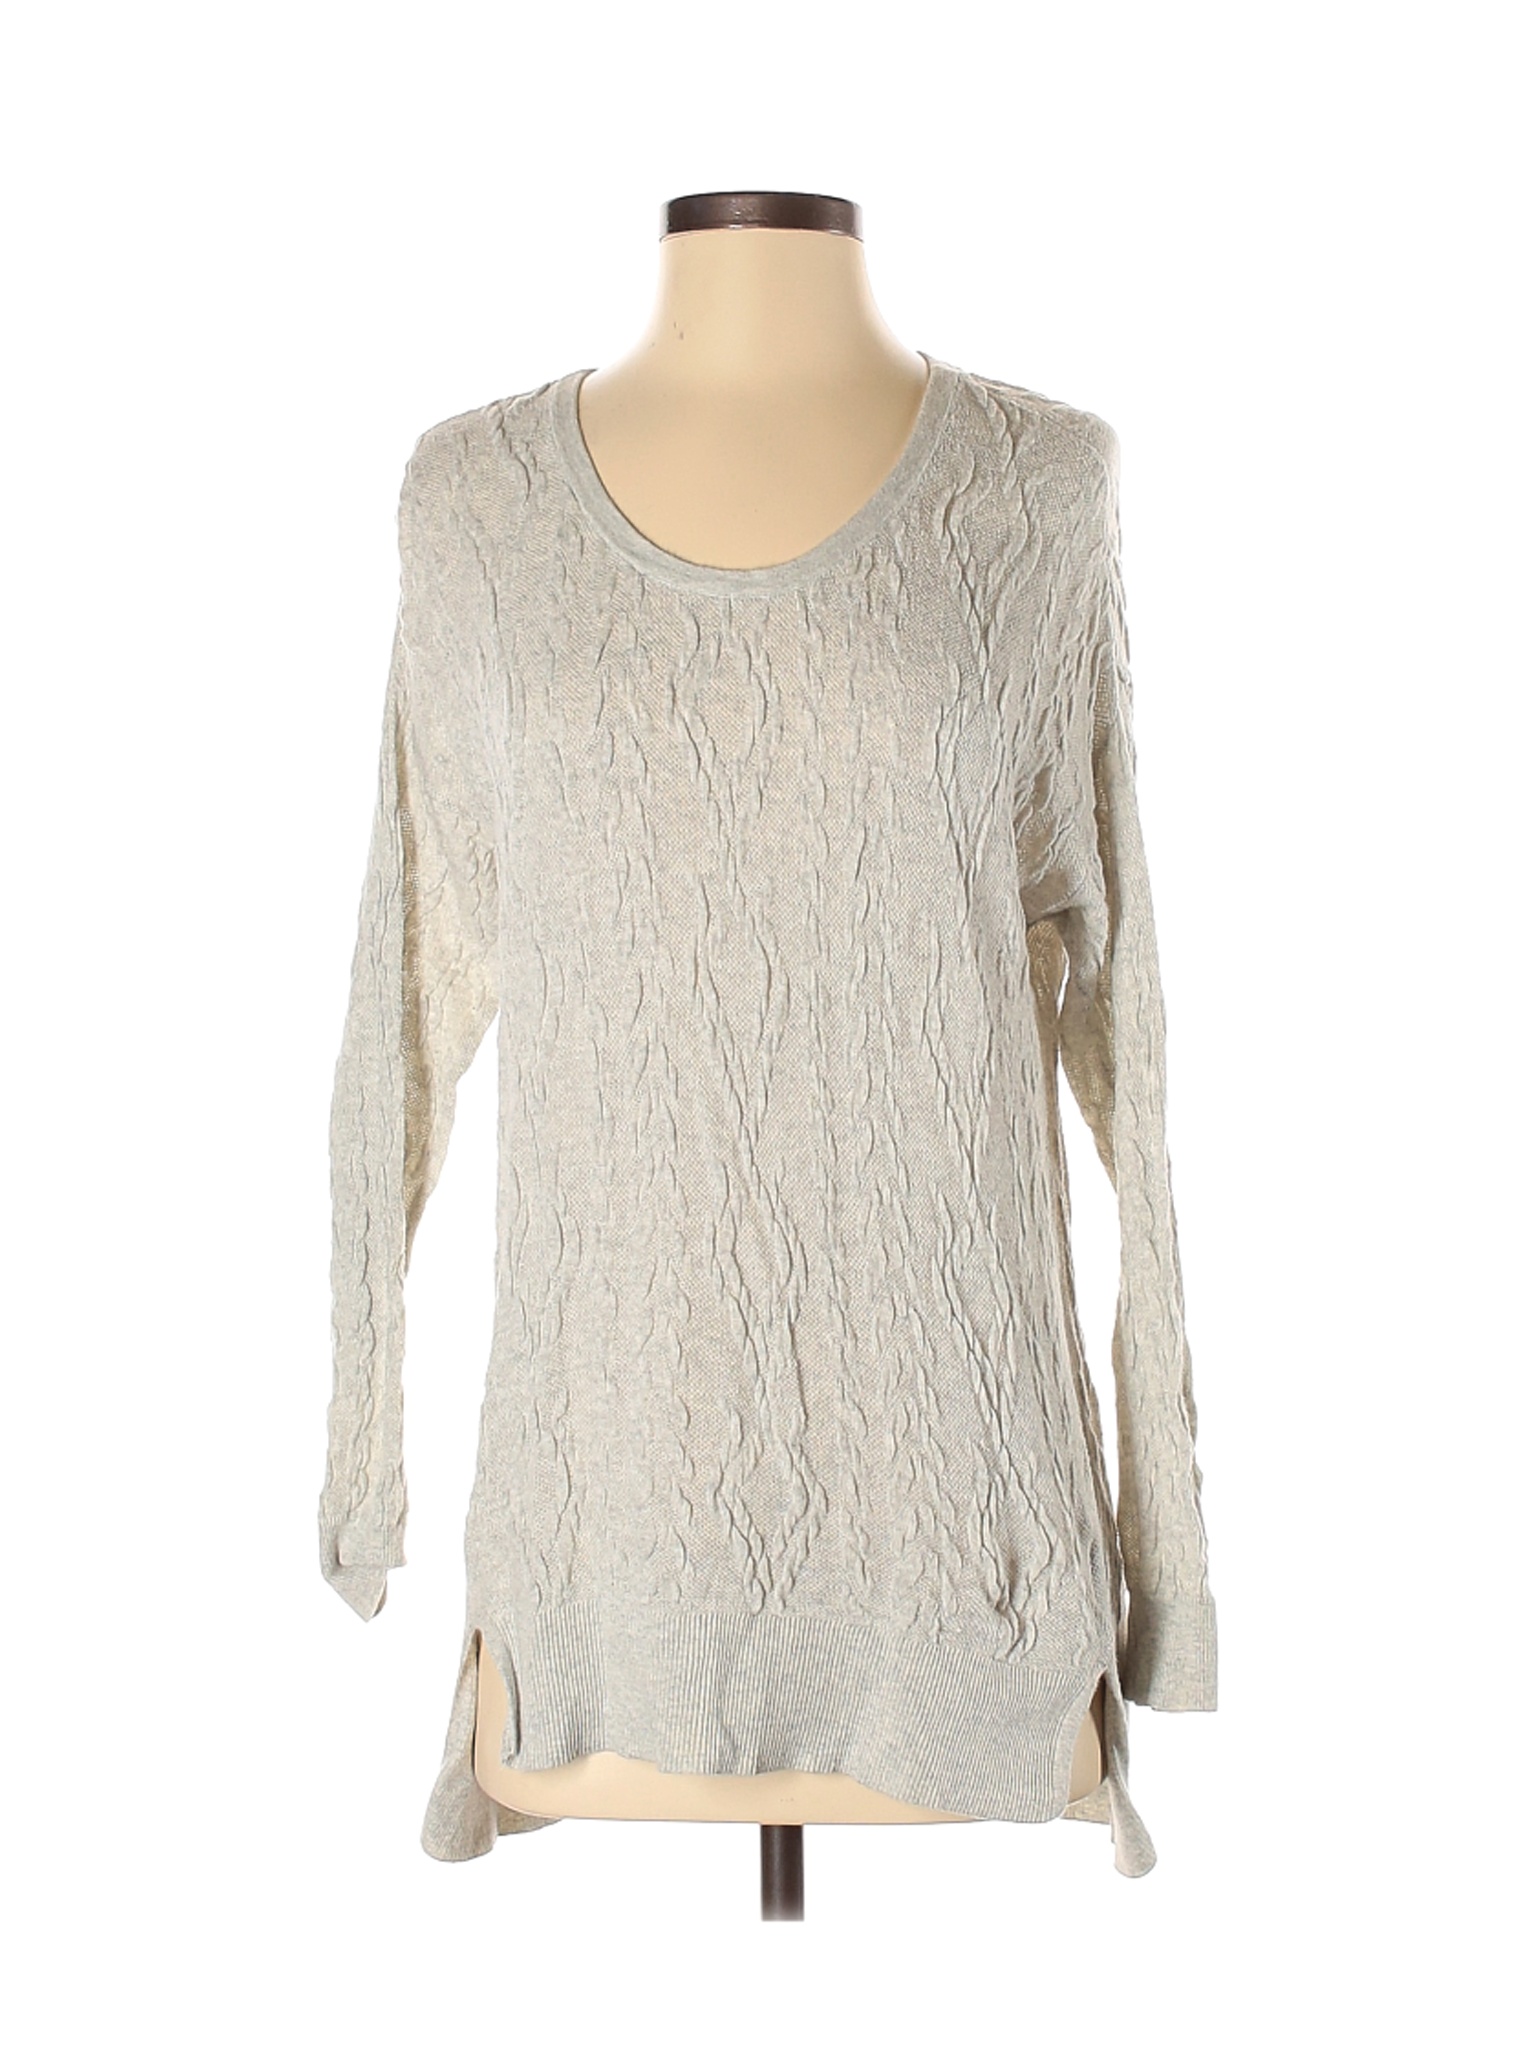 Simply Vera Vera Wang Women White Pullover Sweater S | eBay